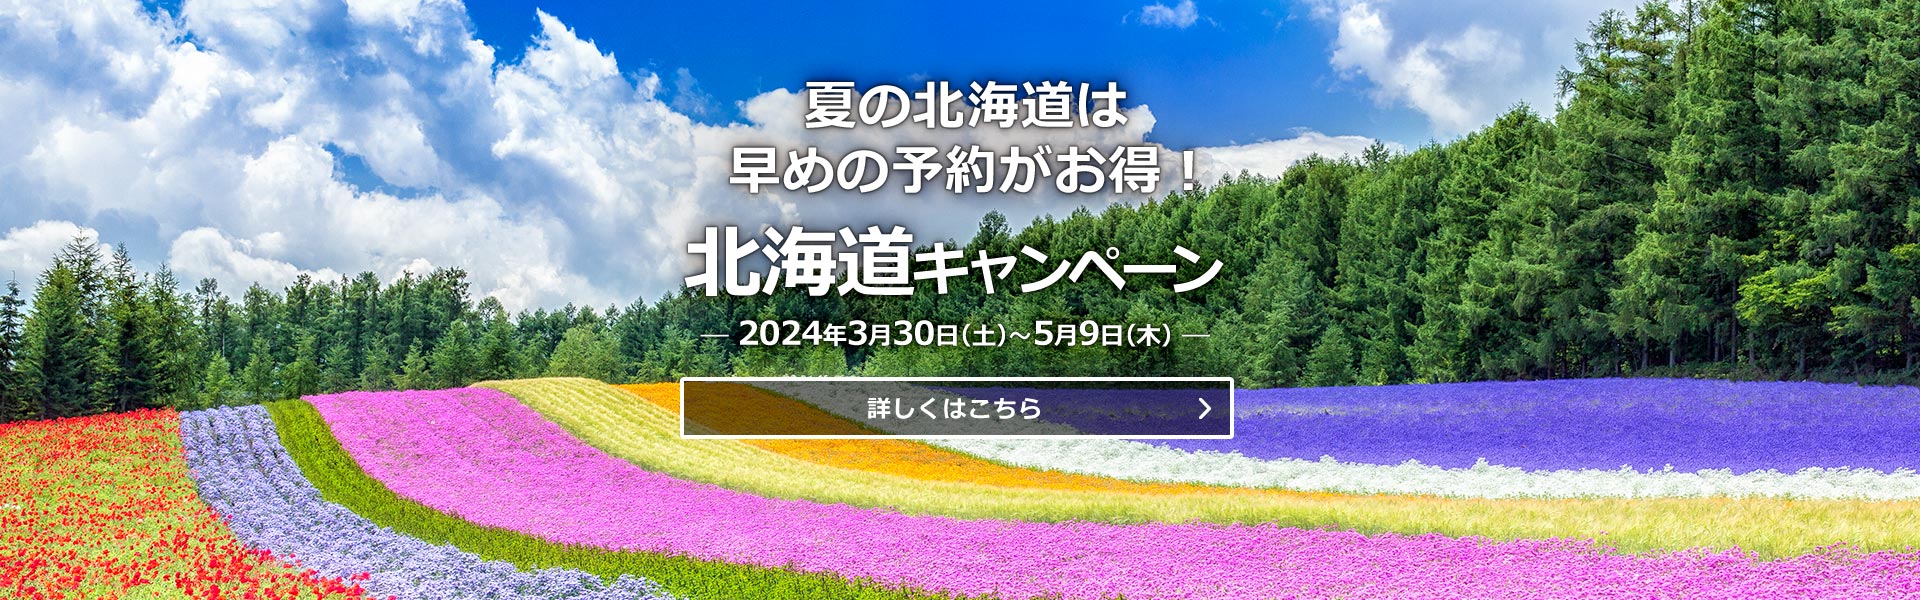 国内_北海道キャンペーン